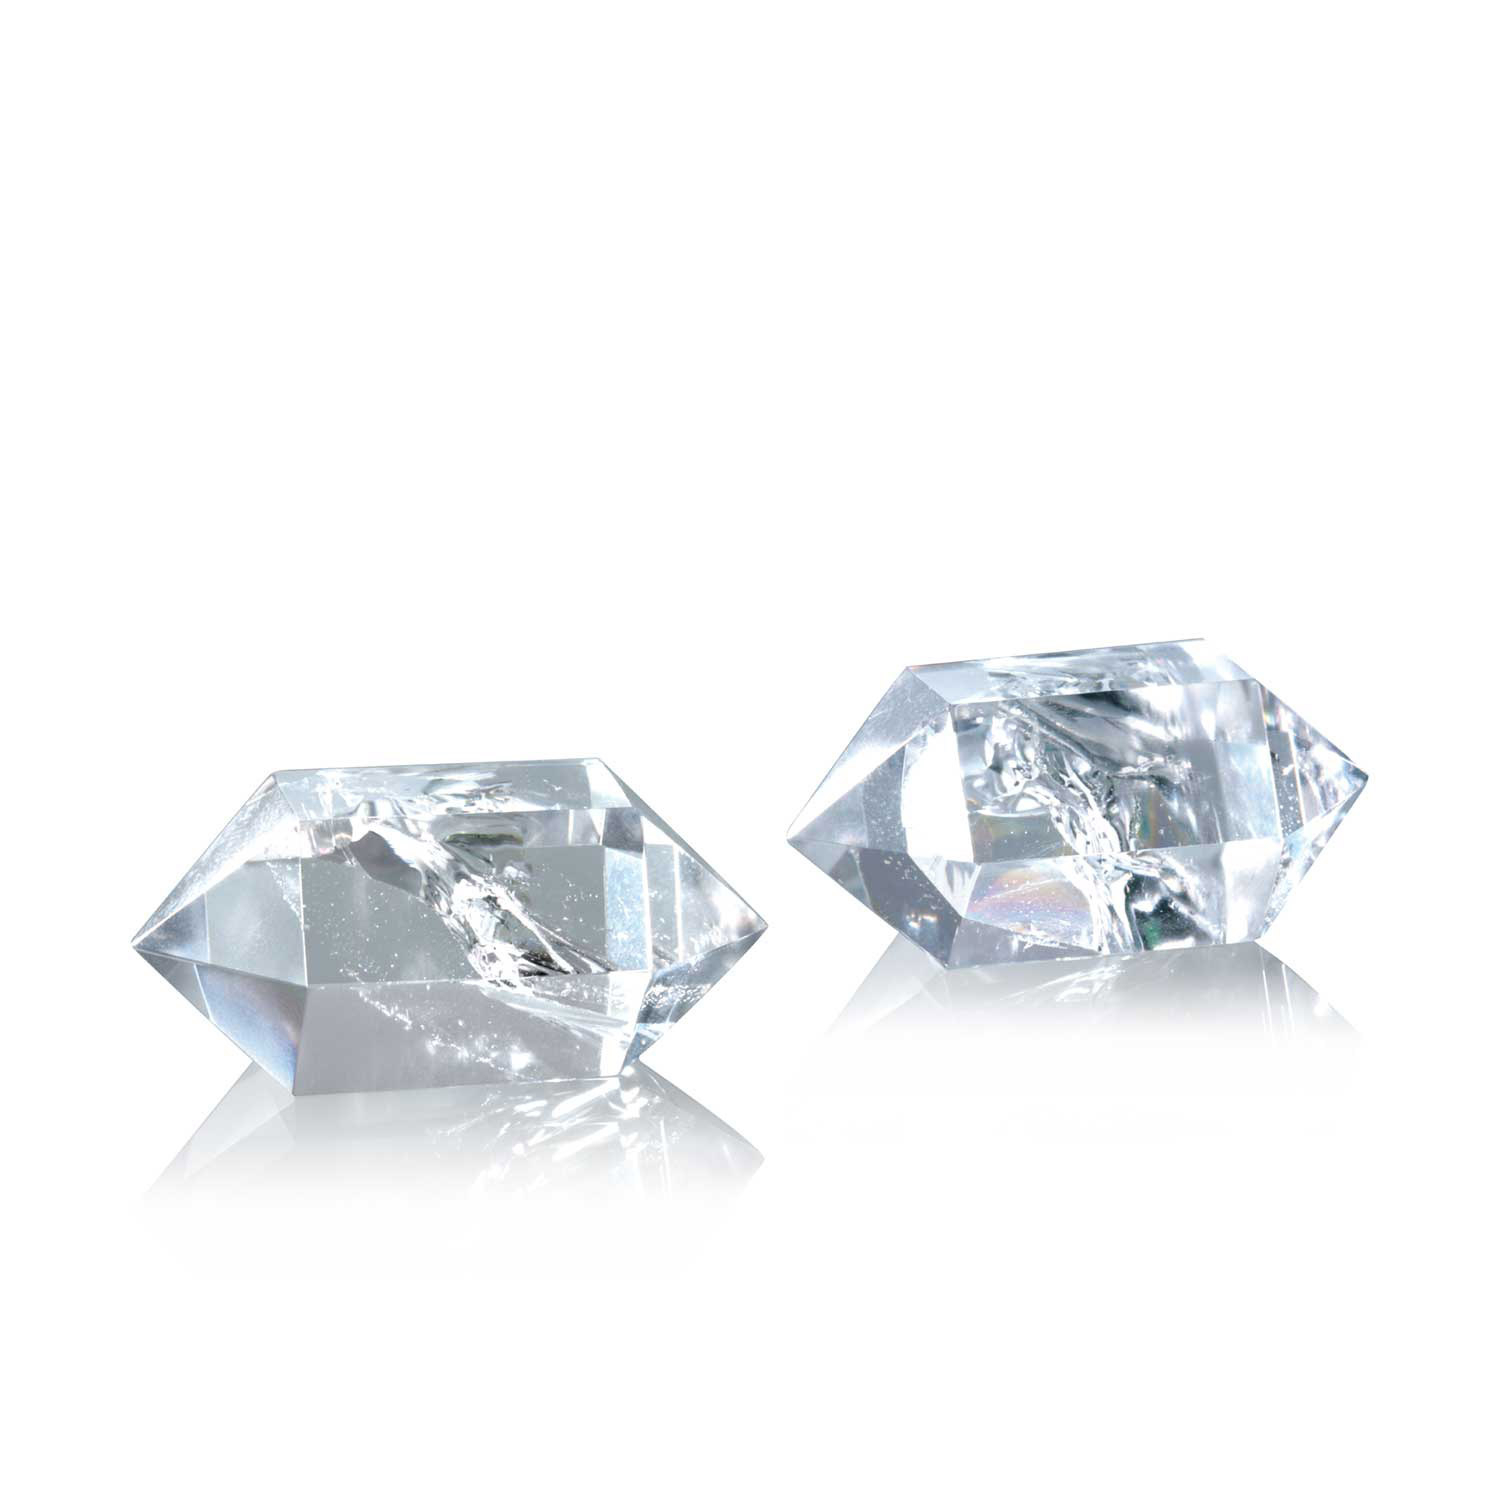 Bergkristall-Meditations-„Diamanten“, 2er Set, Produktbild 1